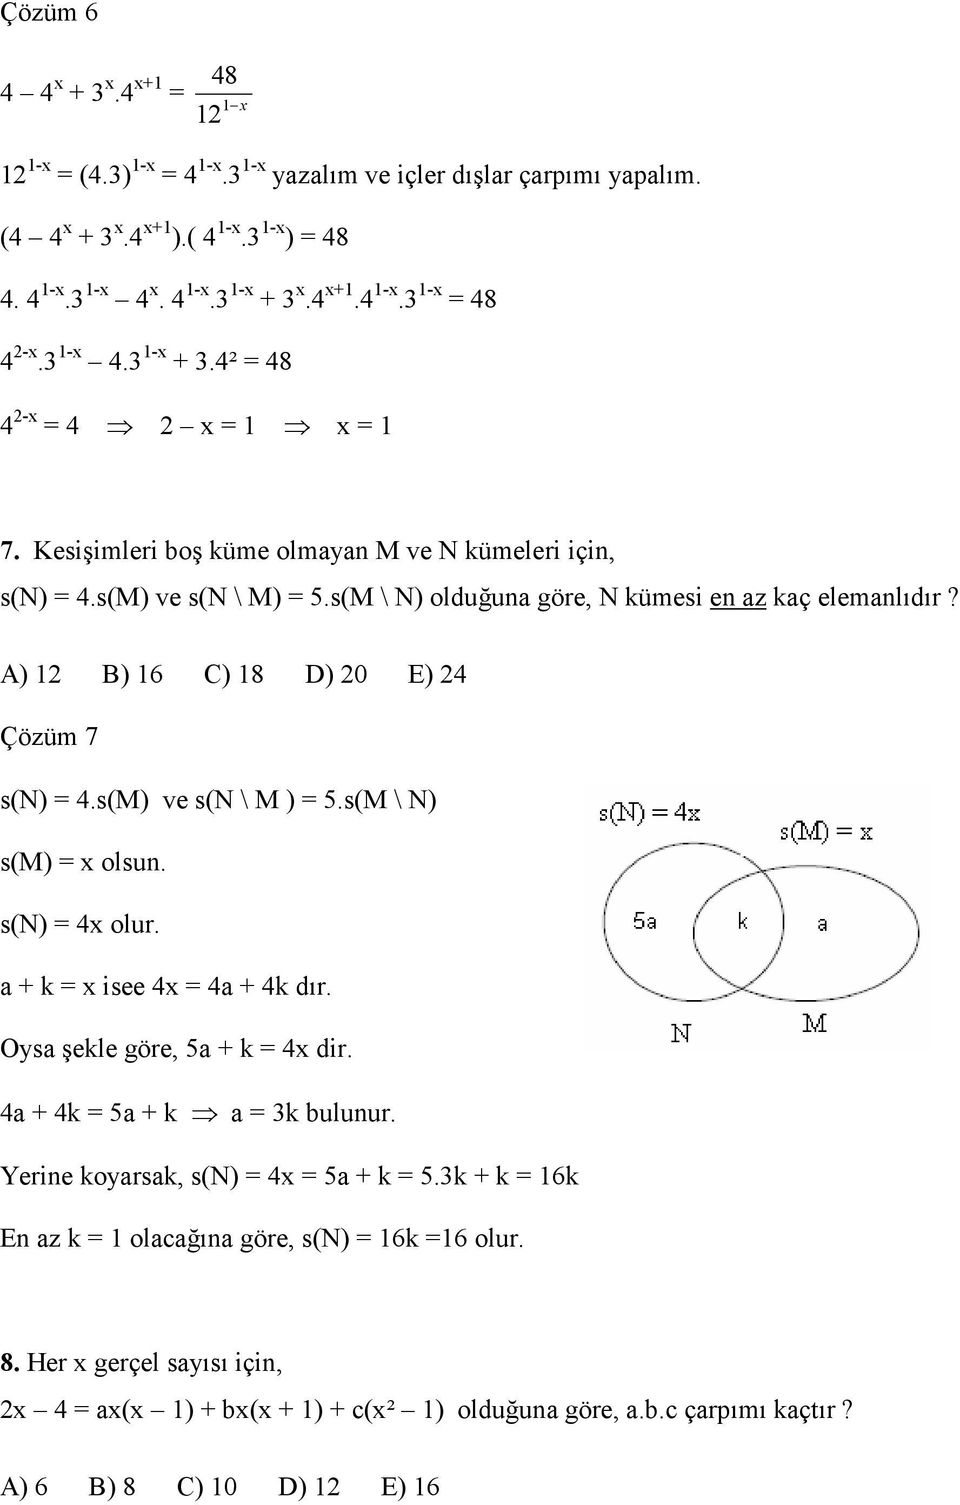 A) B) 6 C) 8 D) 0 E) 4 Çözüm 7 s(n) 4.s(M) ve s(n \ M ) 5.s(M \ N) s(m) x olsun. s(n) 4x olur. a + k x isee 4x 4a + 4k dır. Oysa şekle göre, 5a + k 4x dir. 4a + 4k 5a + k a 3k bulunur.